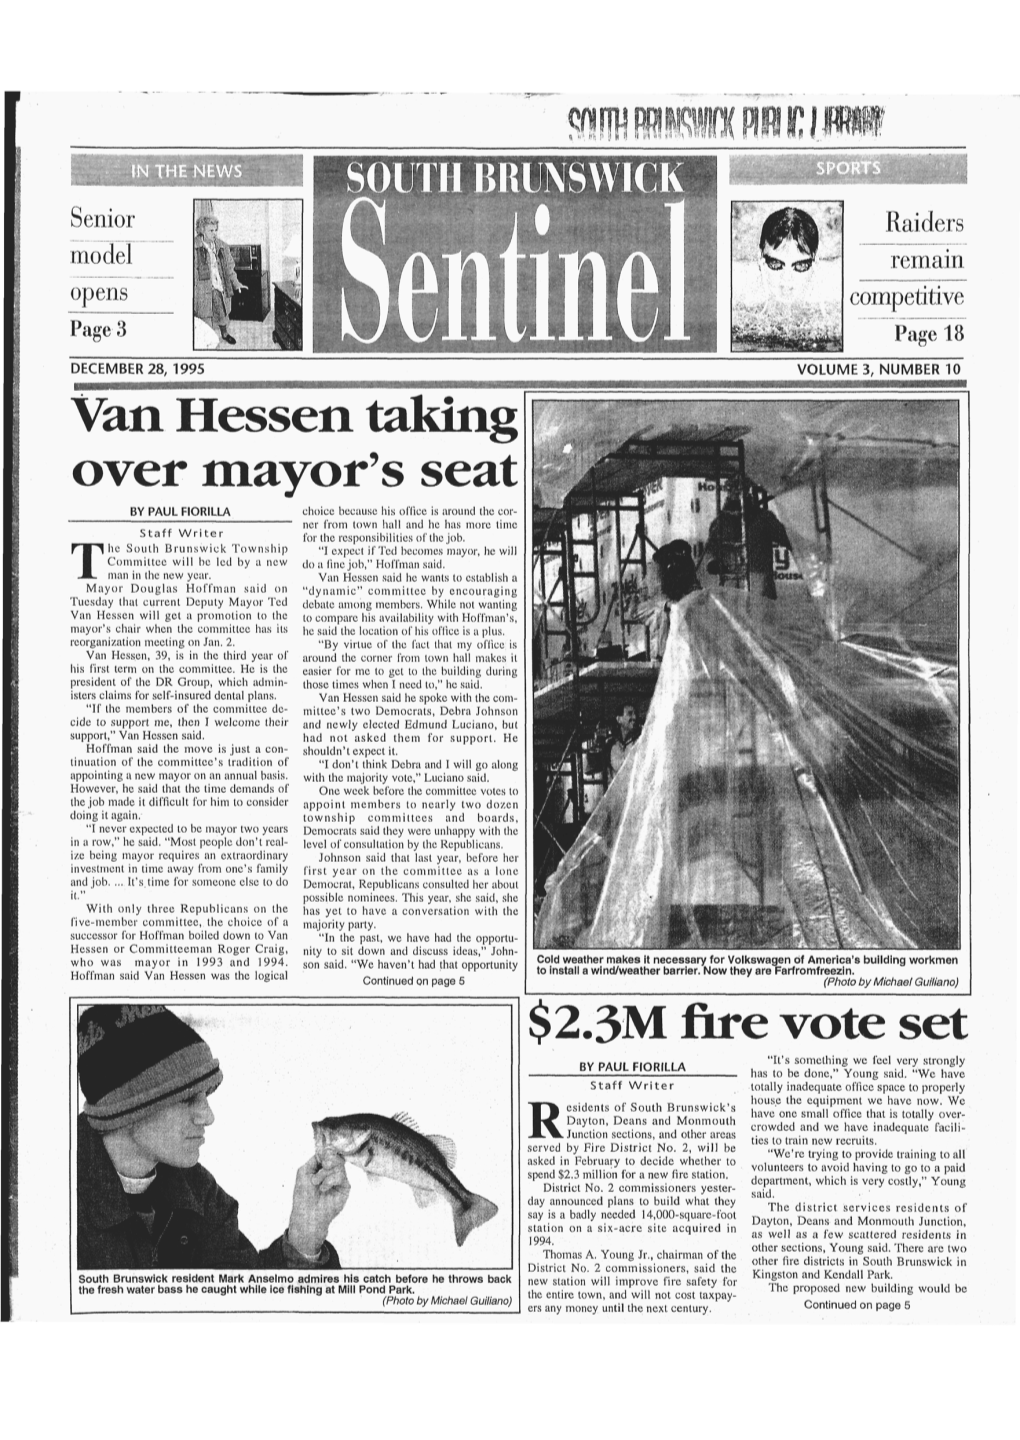 Van Hessen Taking Over Mayor's Seat $2.3M Fire Vote